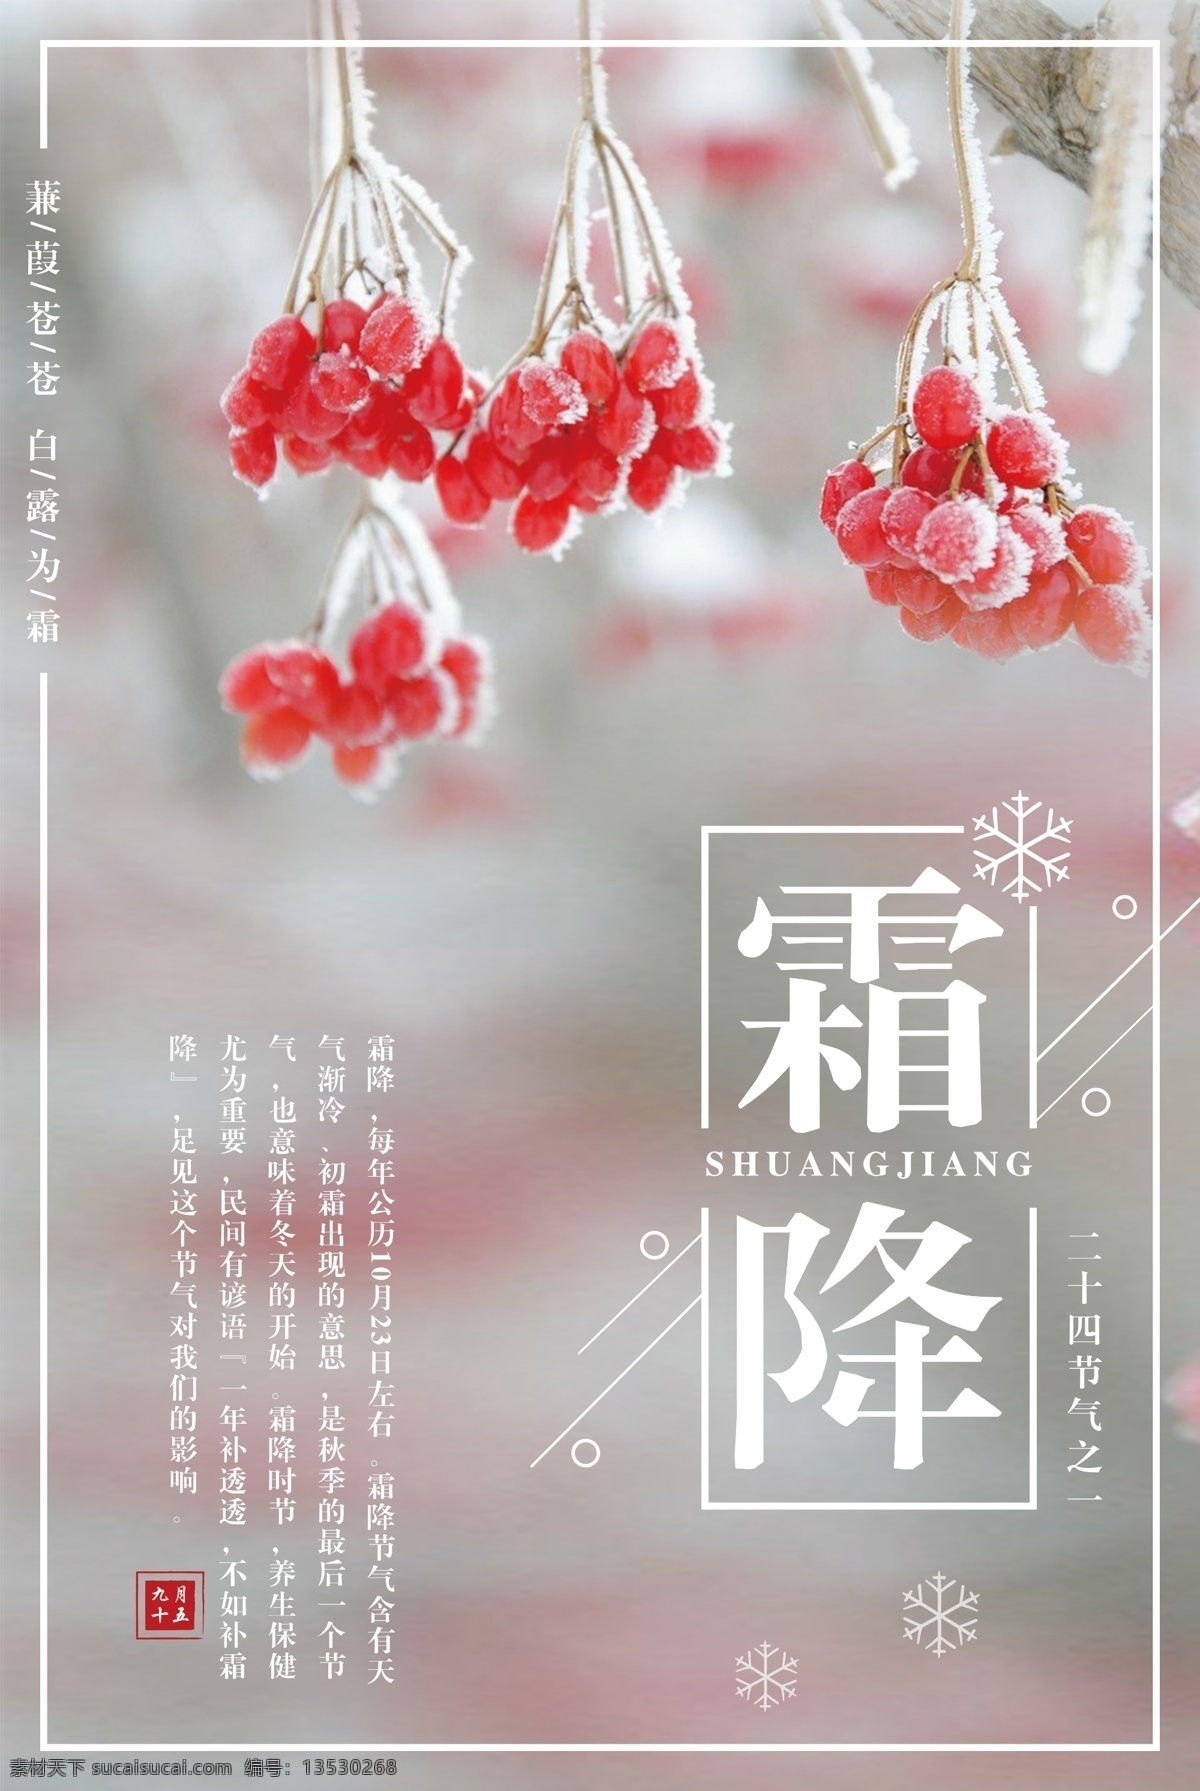 霜降 二十四节气 之一 宣传海报 节日海报 创意简约 节气 二十四节 中国节气 中国传统节气